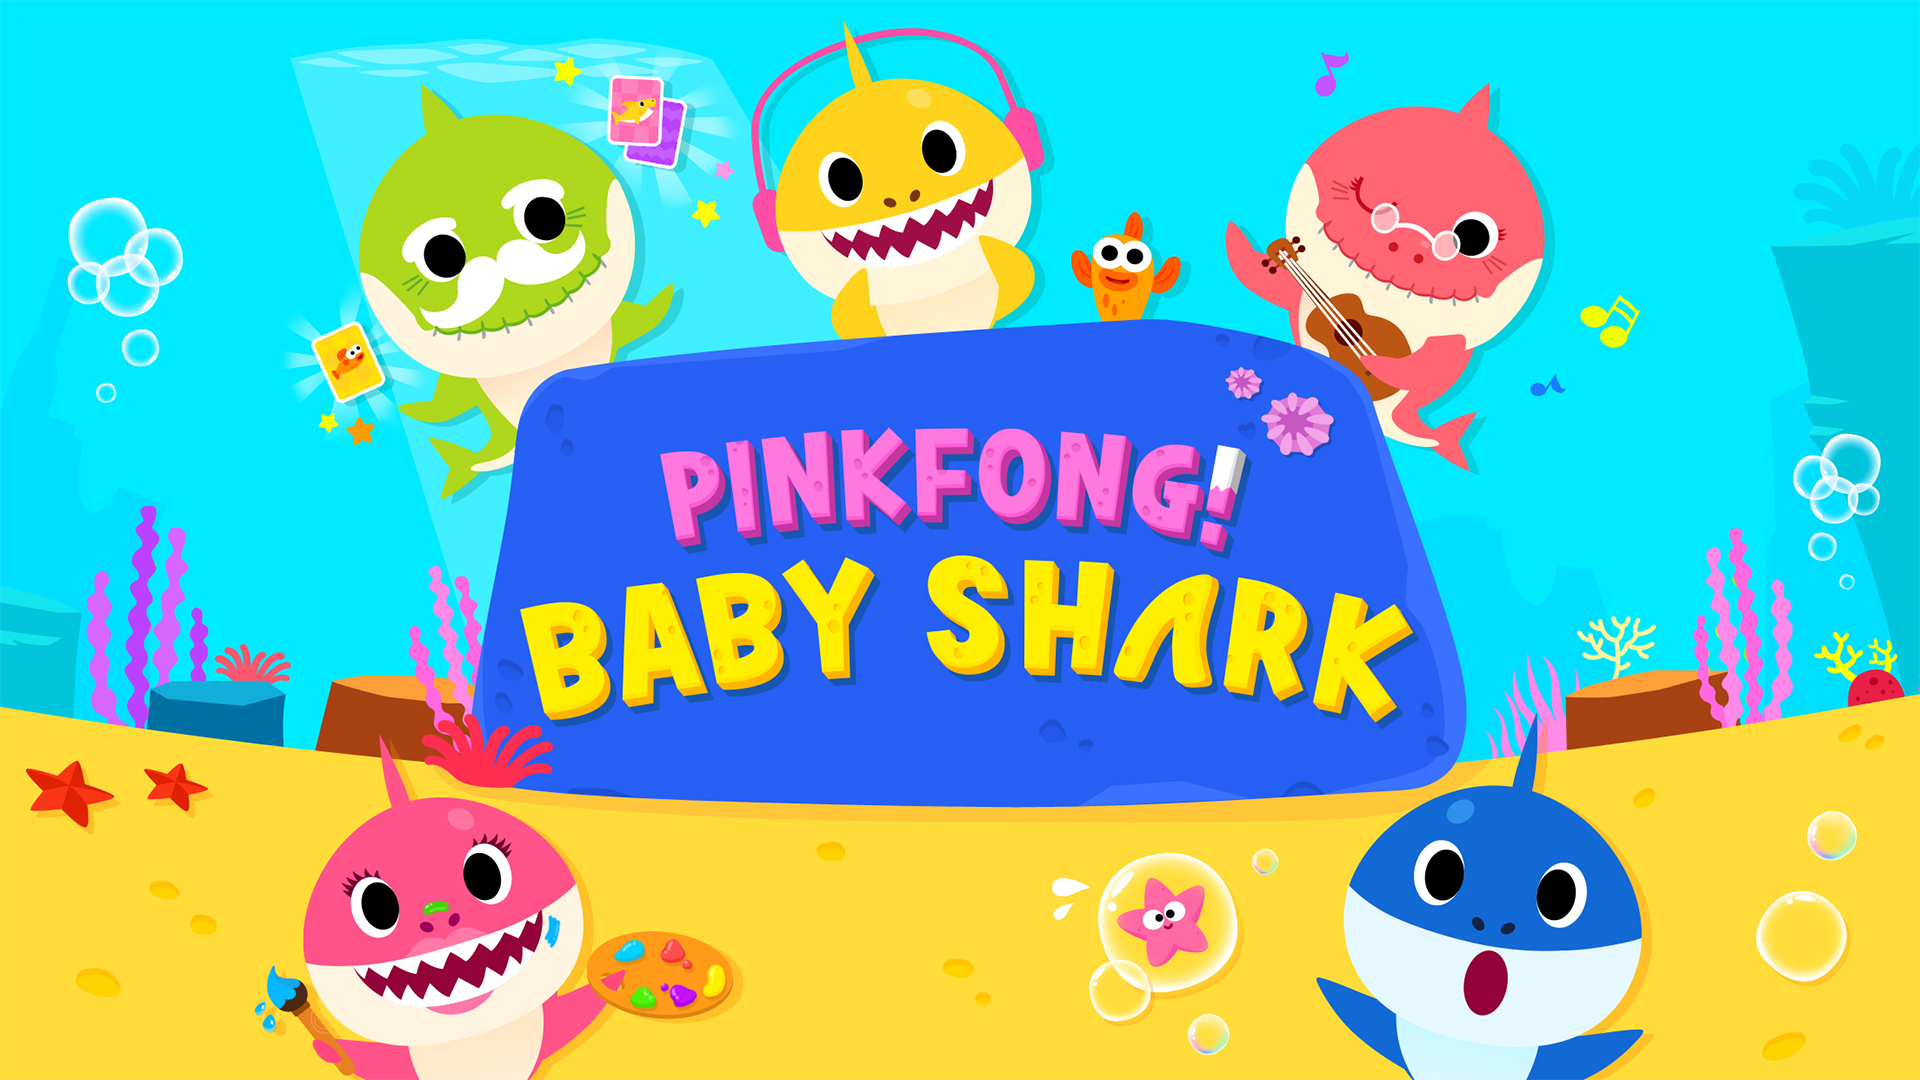 Pinkfong BABY SHARK font